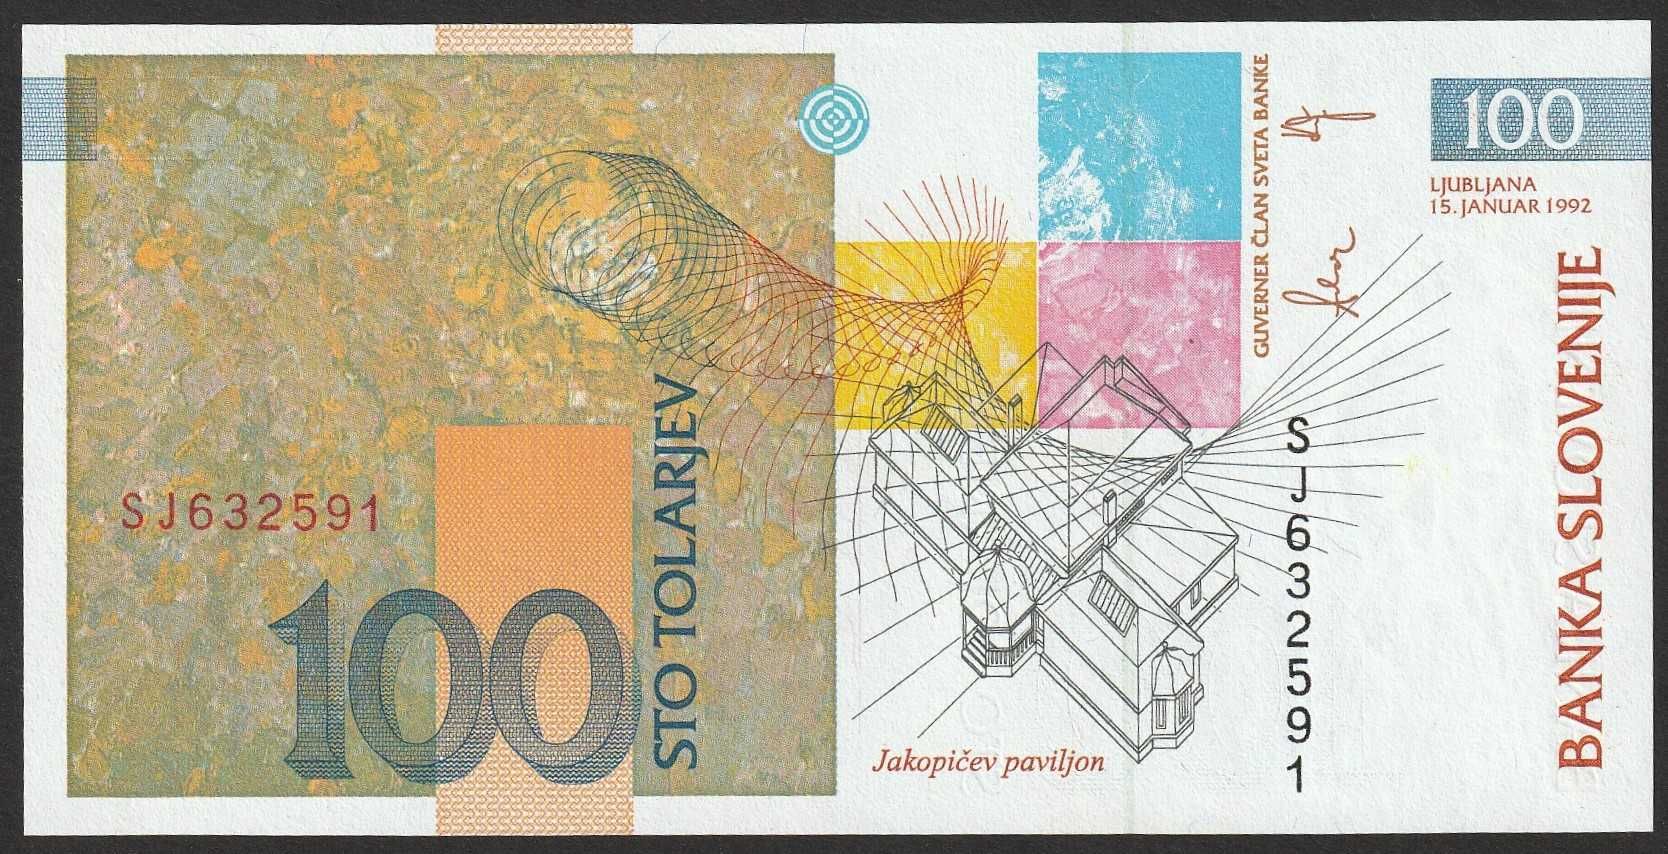 Słowenia 100 tolar 1992 - Jakopic - stan bankowy UNC